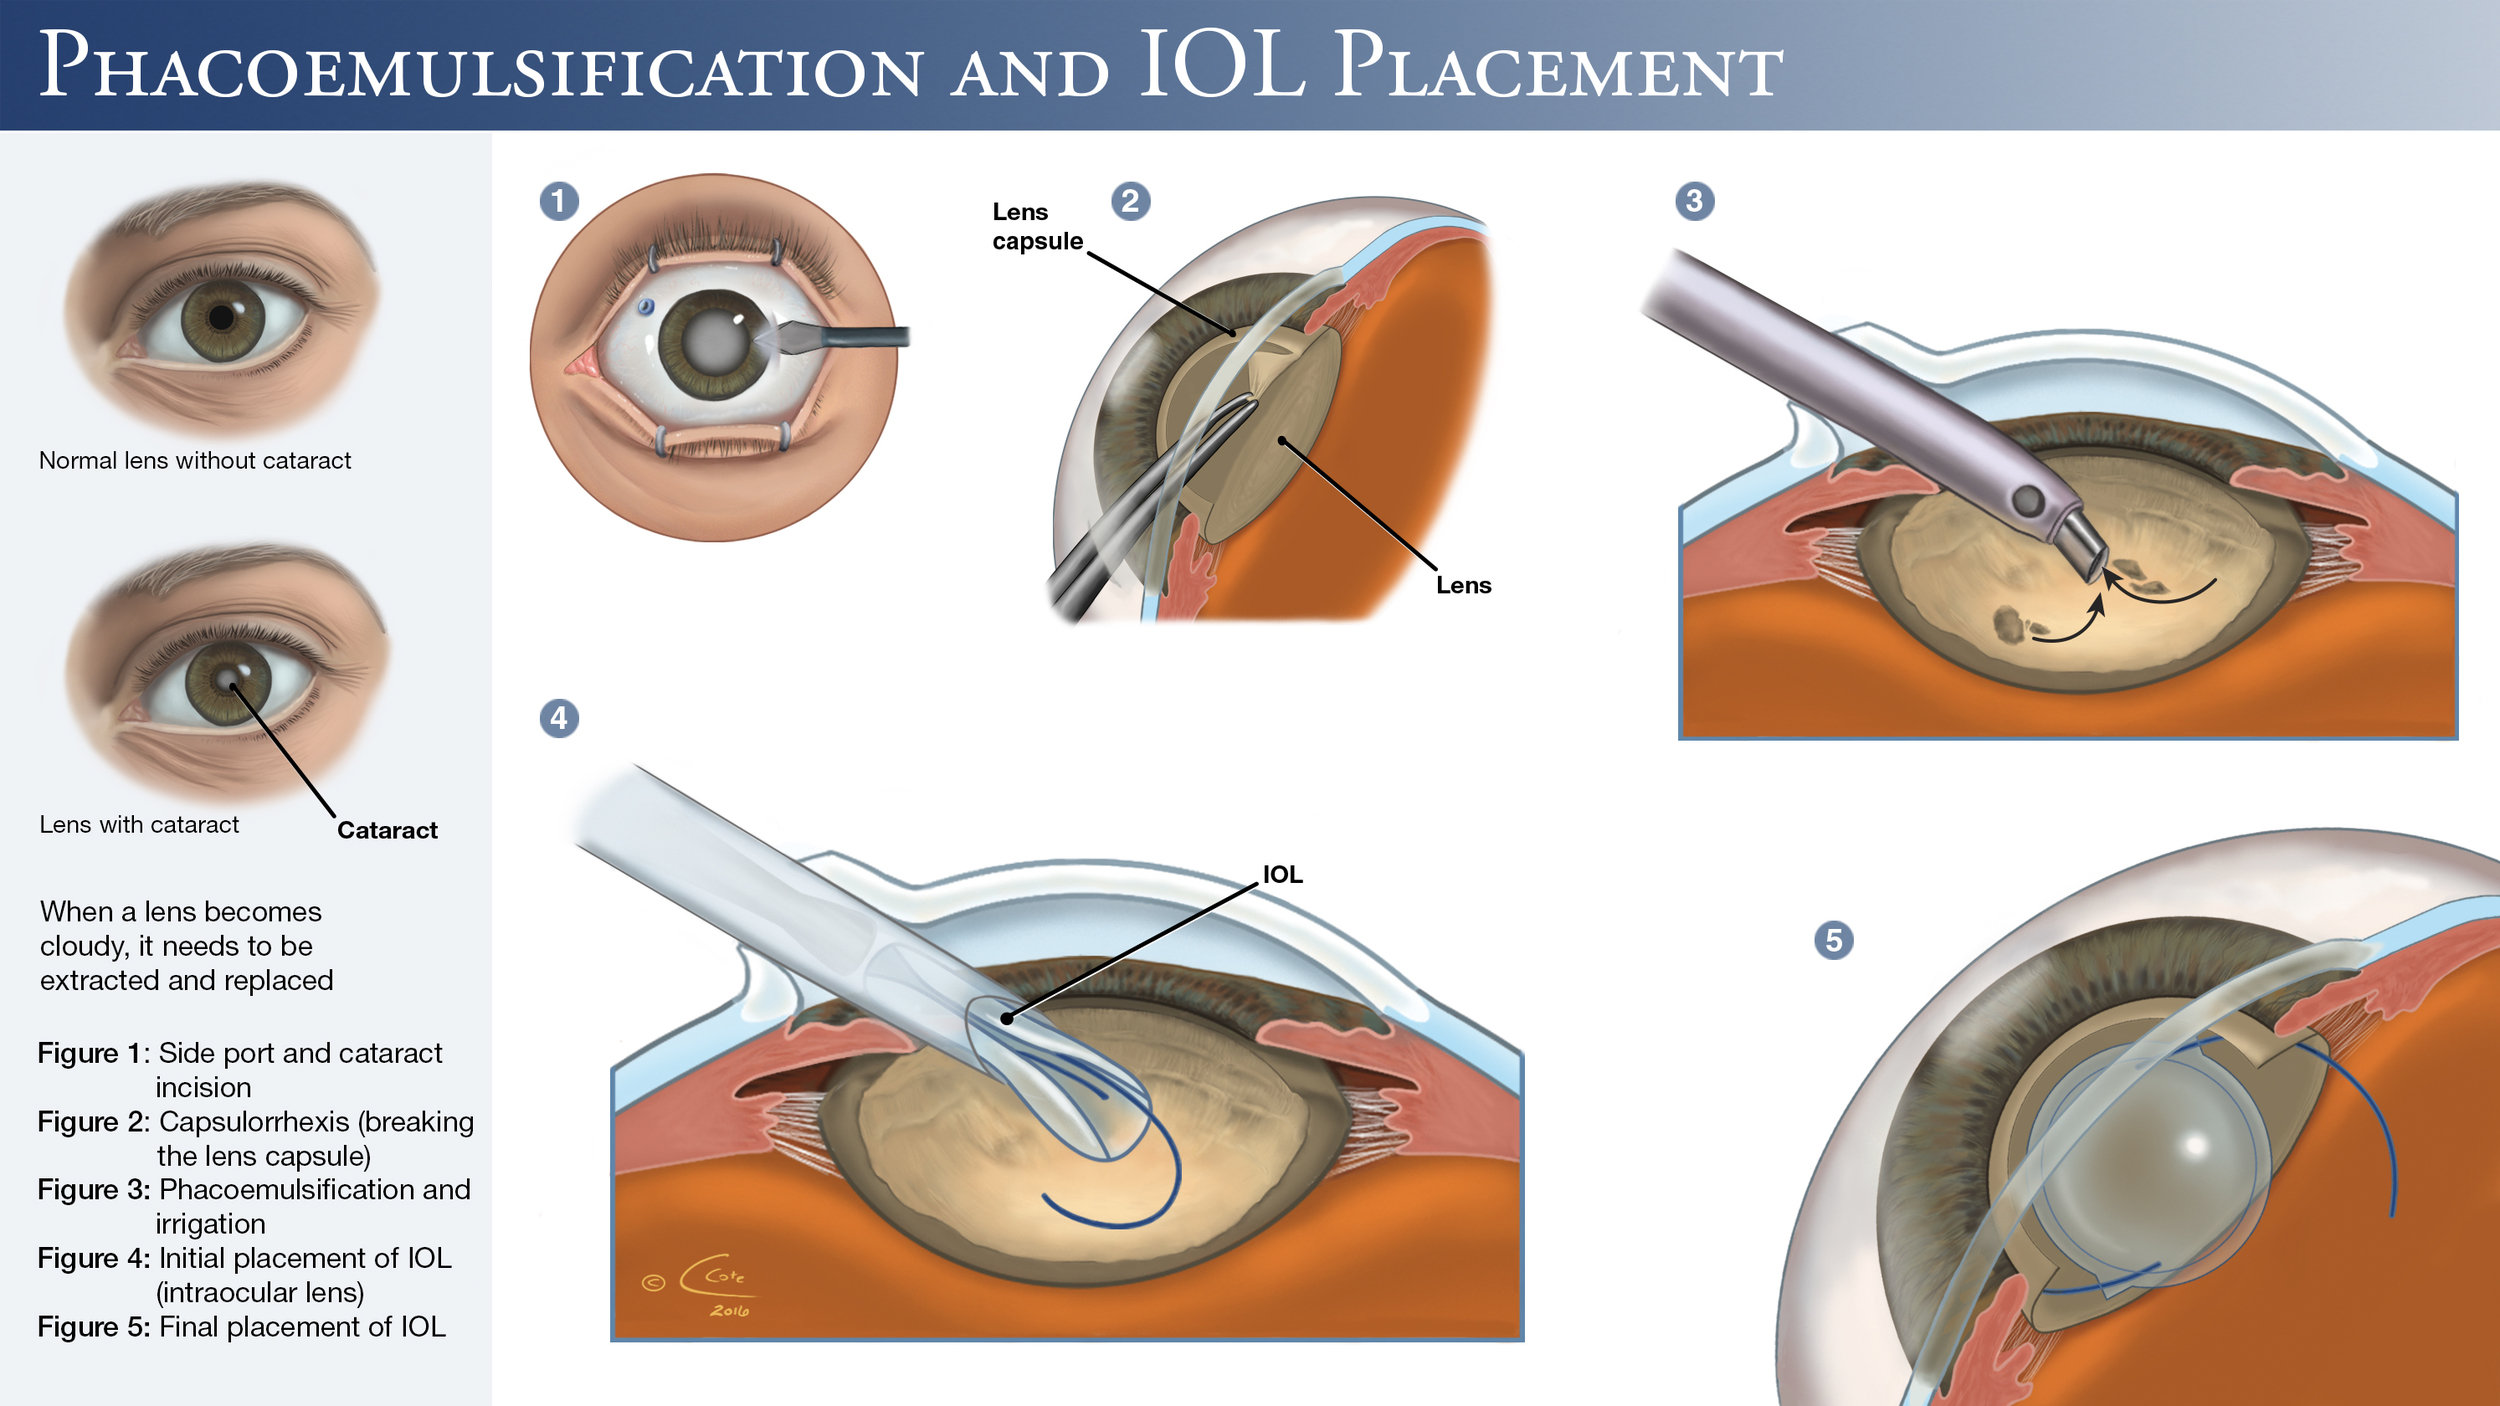 Когда после замены хрусталика восстанавливается зрение глаза. Факоэмульсификация катаракты с имплантацией интраокулярной линзы. Операция ультразвуковая факоэмульсификация катаракты. Катаракта операция с имплантацией ИОЛ. Факоэмульсификация катаракты этапы операции.